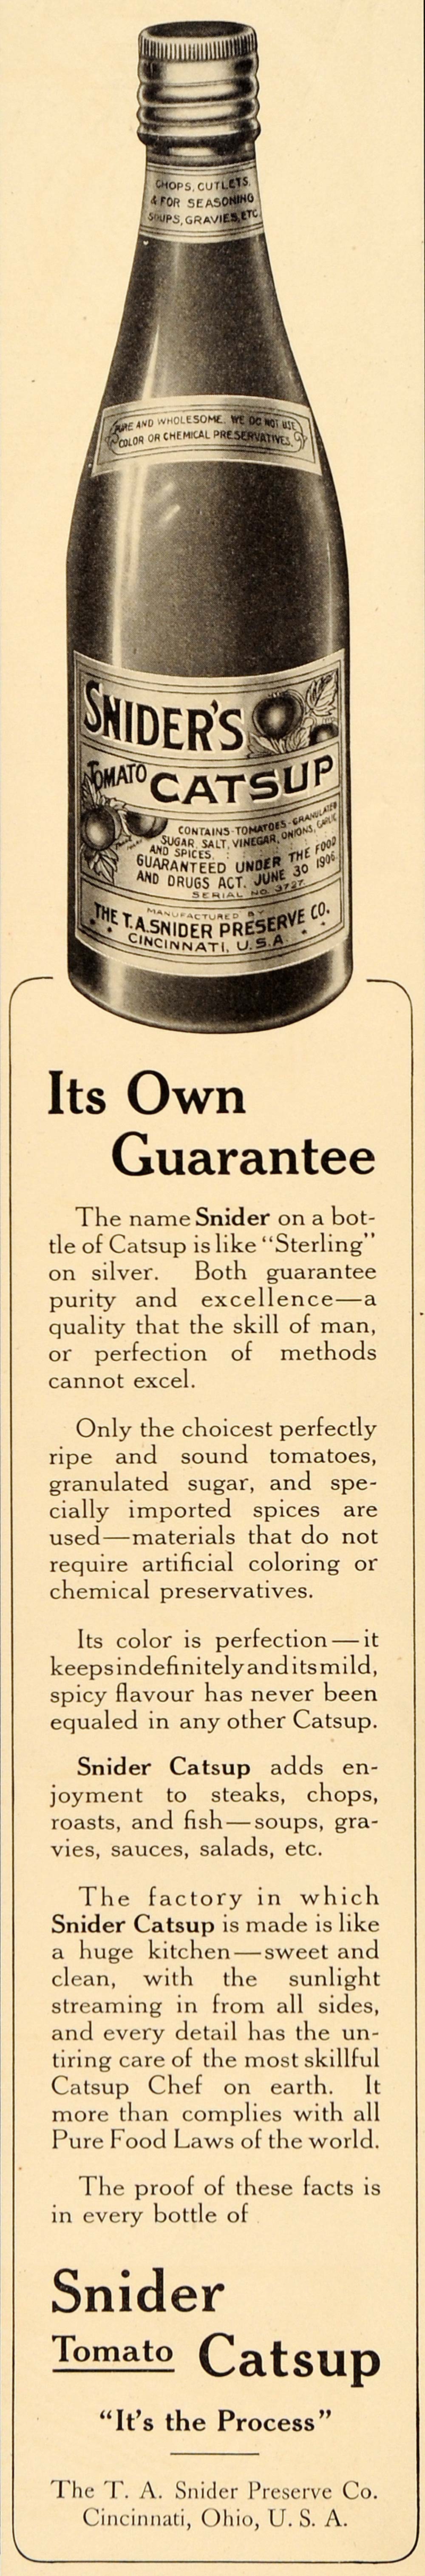 1910 Ad Snider's Tomato Catsup Cincinatti Ohio Preserve - ORIGINAL LHJ1